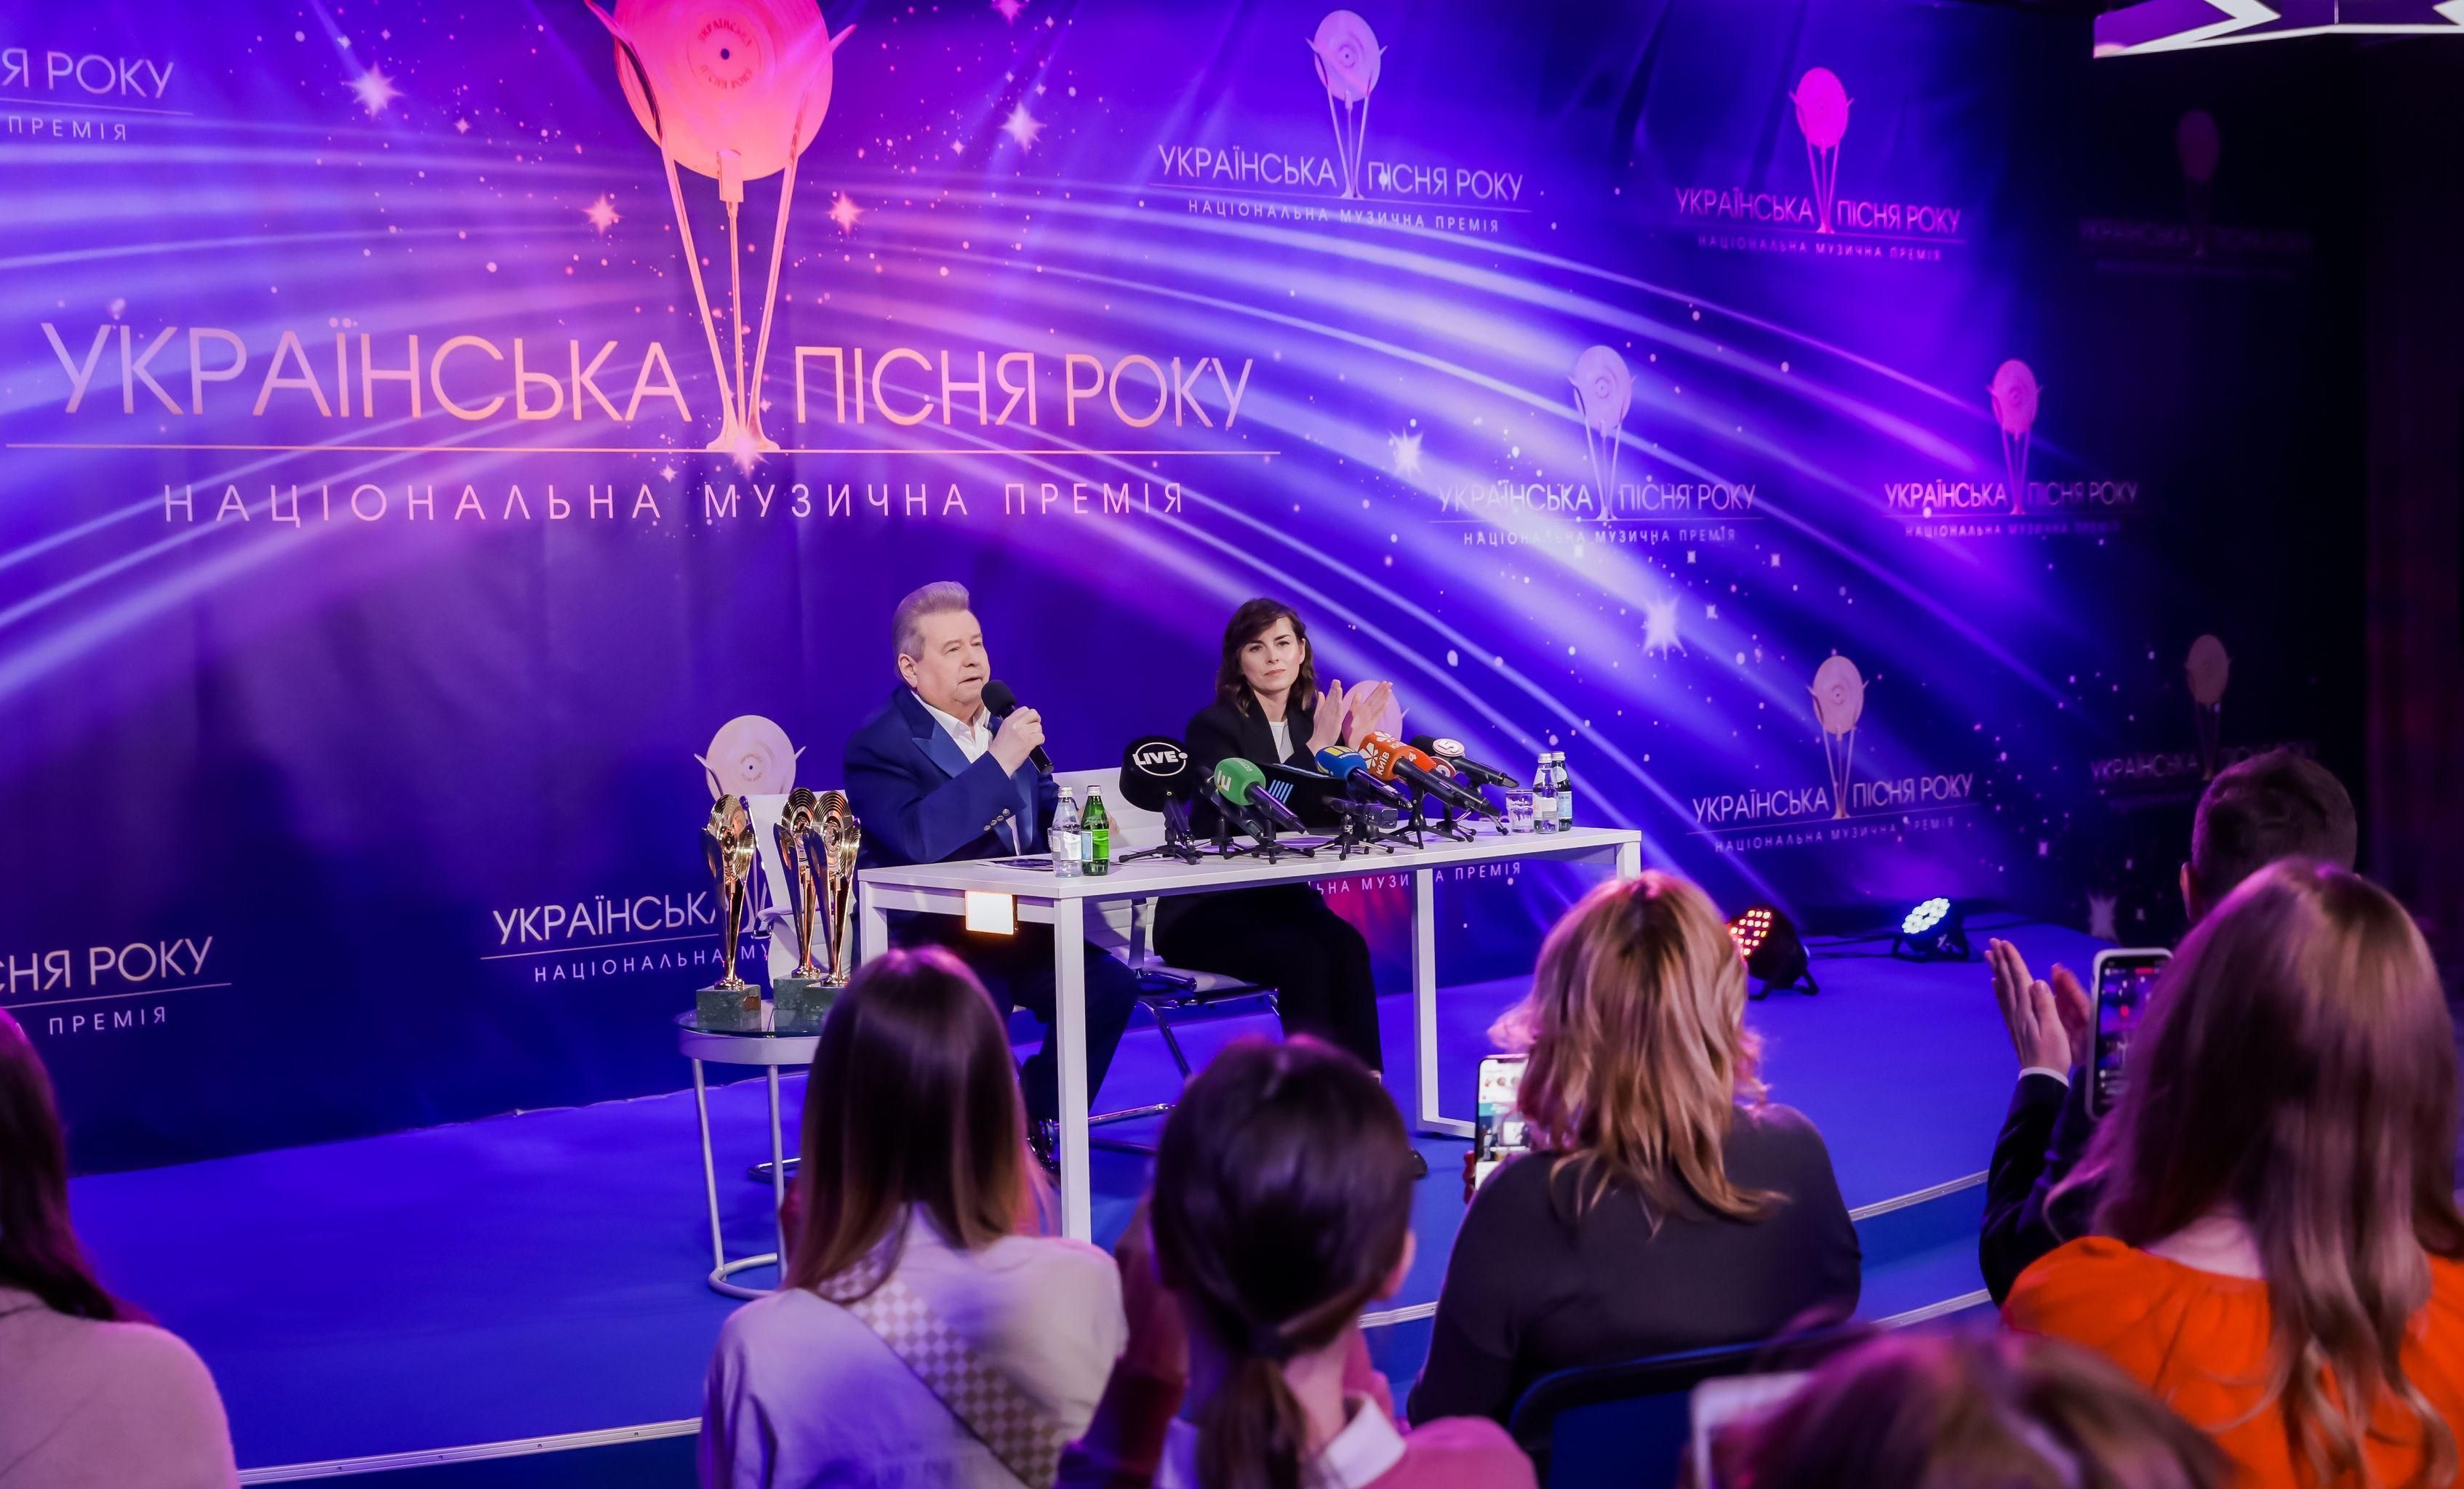 Прем'єри від Сердючки і Винника: Поплавський анонсував ювілейну "Українську пісню року-2021" - Showbiz